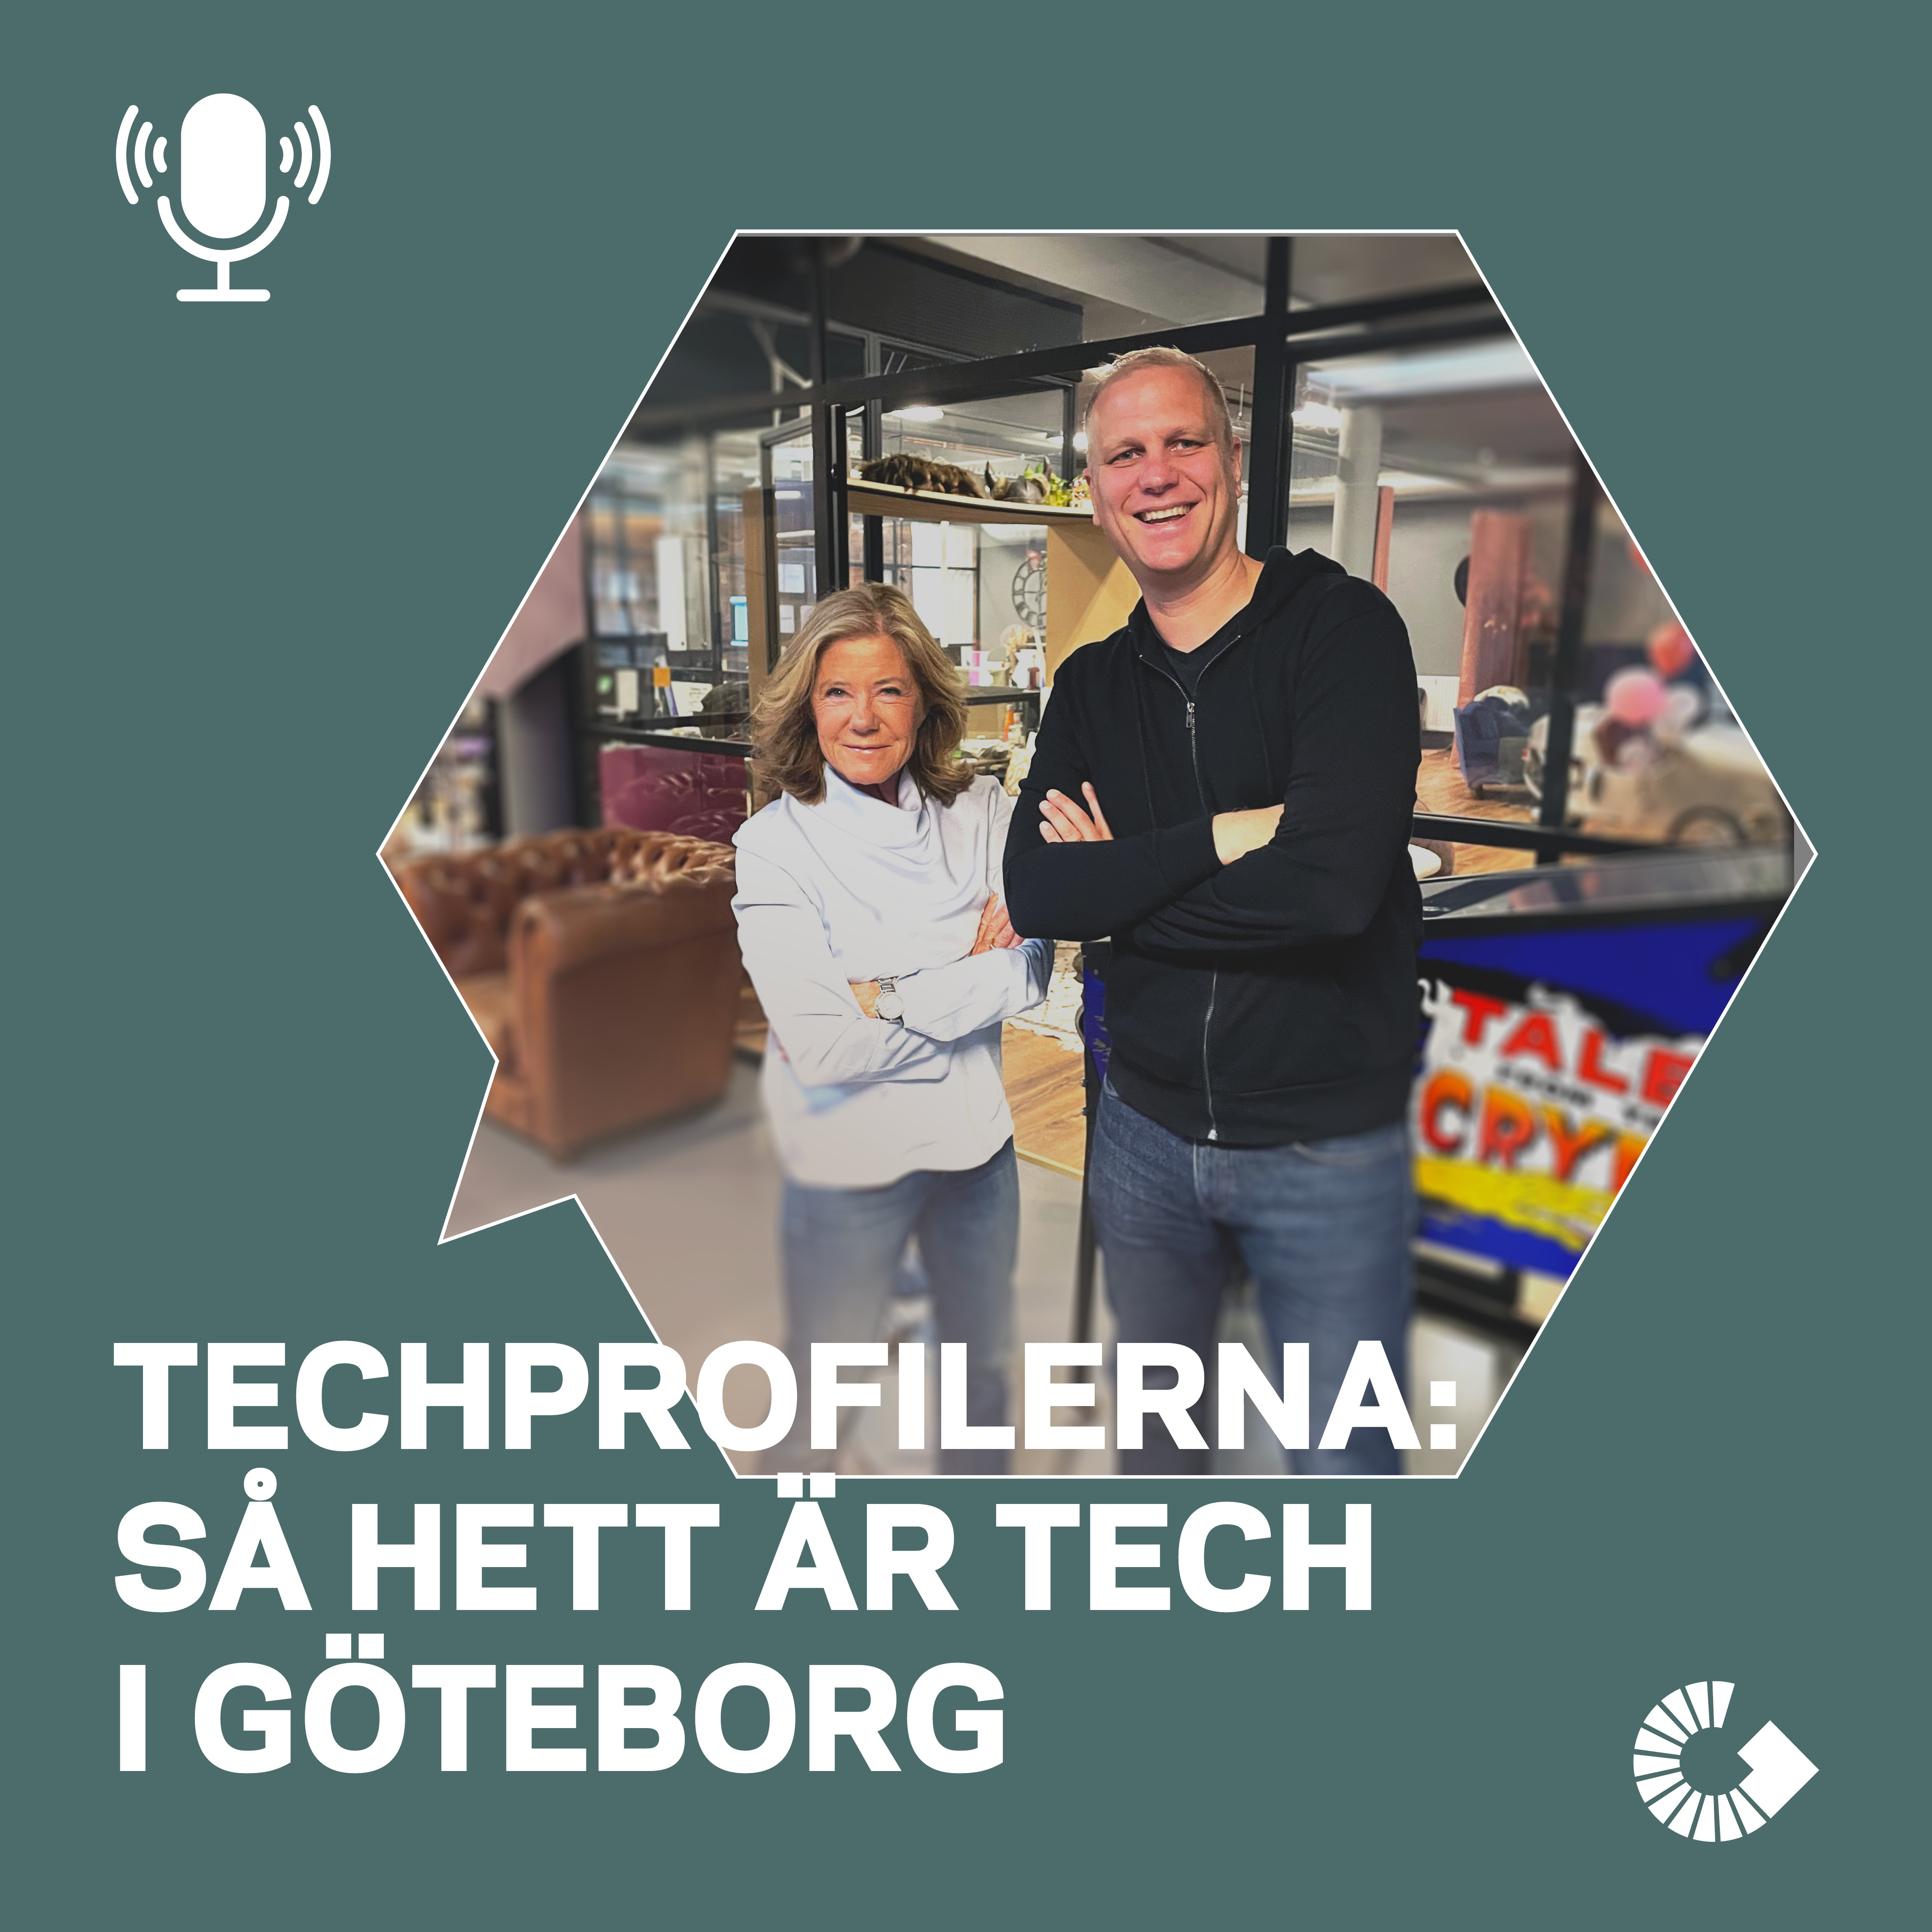 Techprofilerna: Så hett är tech i Göteborg